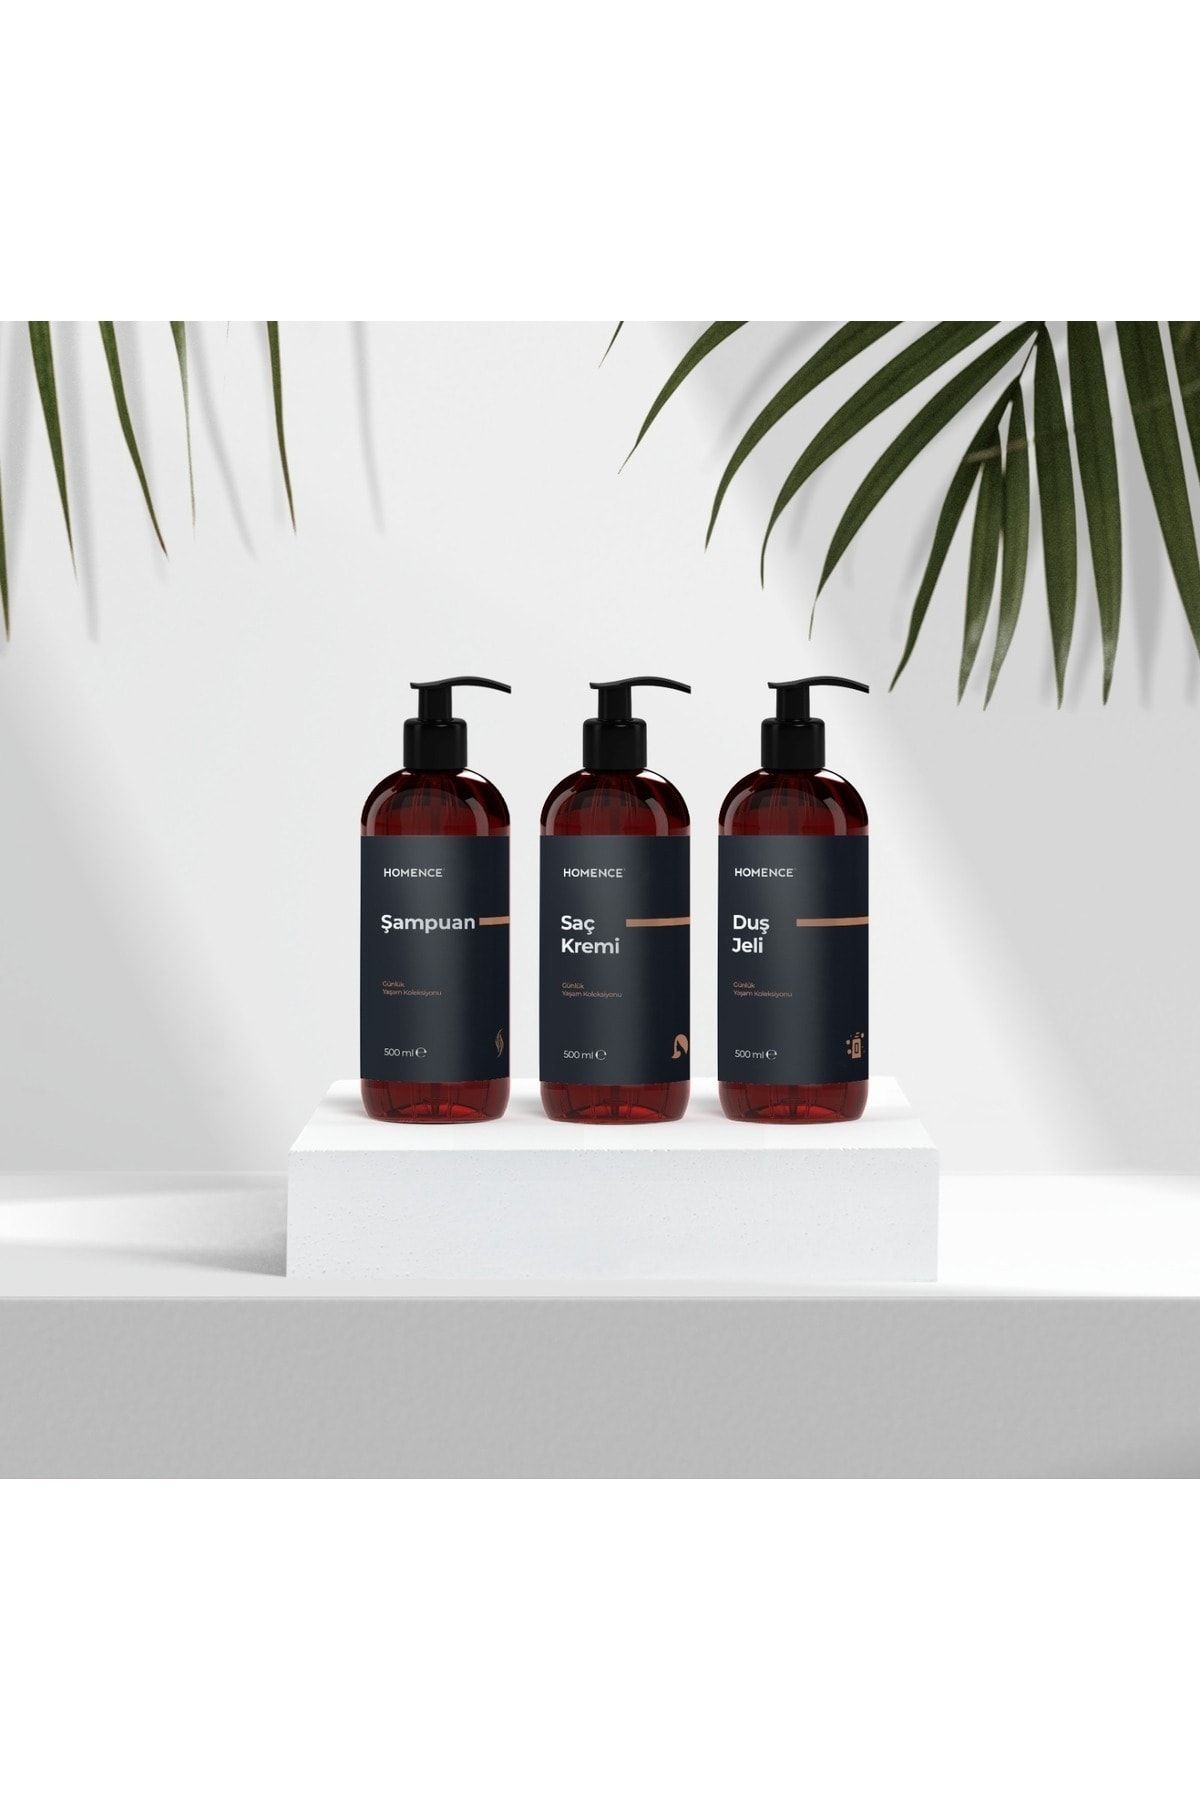 homence Şampuan Duş Jeli Saç Kremi Etiketli Pompalı Plastik Şişe Banyo Seti 3'lü Amber Sabunluk 500 ml